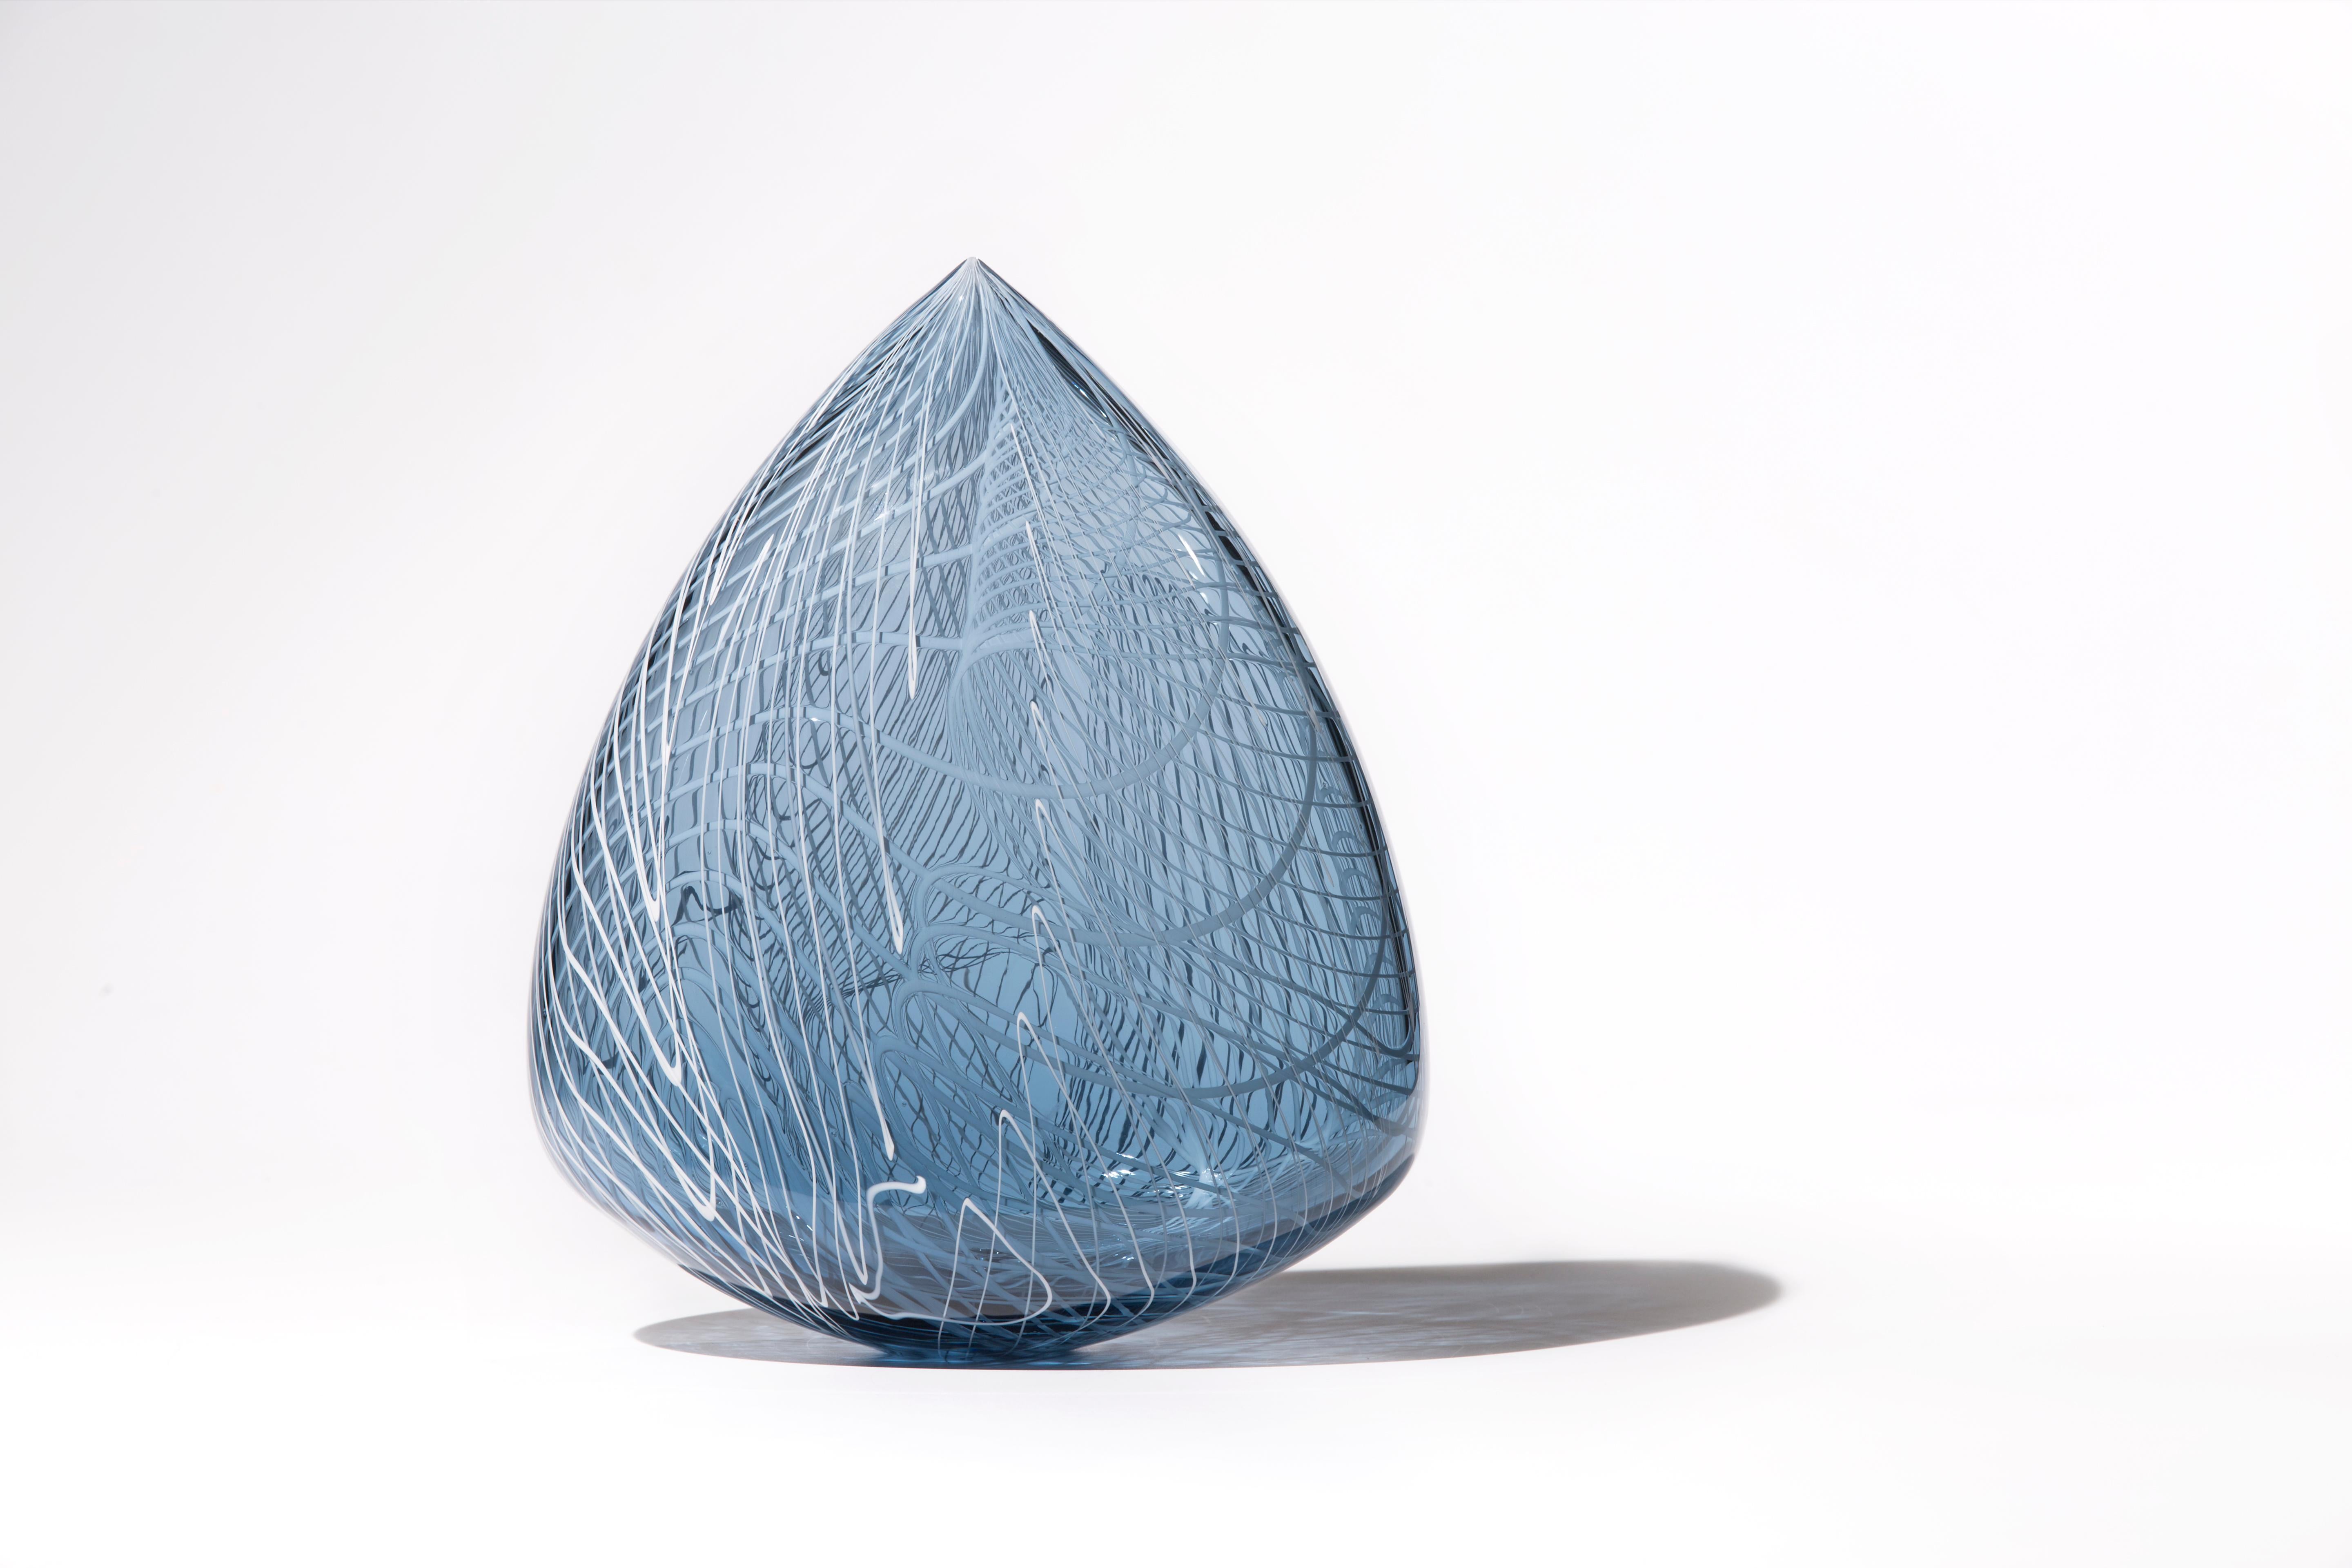 Nancy Callan Abstract Sculpture - "Echo Clovis", Contemporary Blown Glass Sculpture